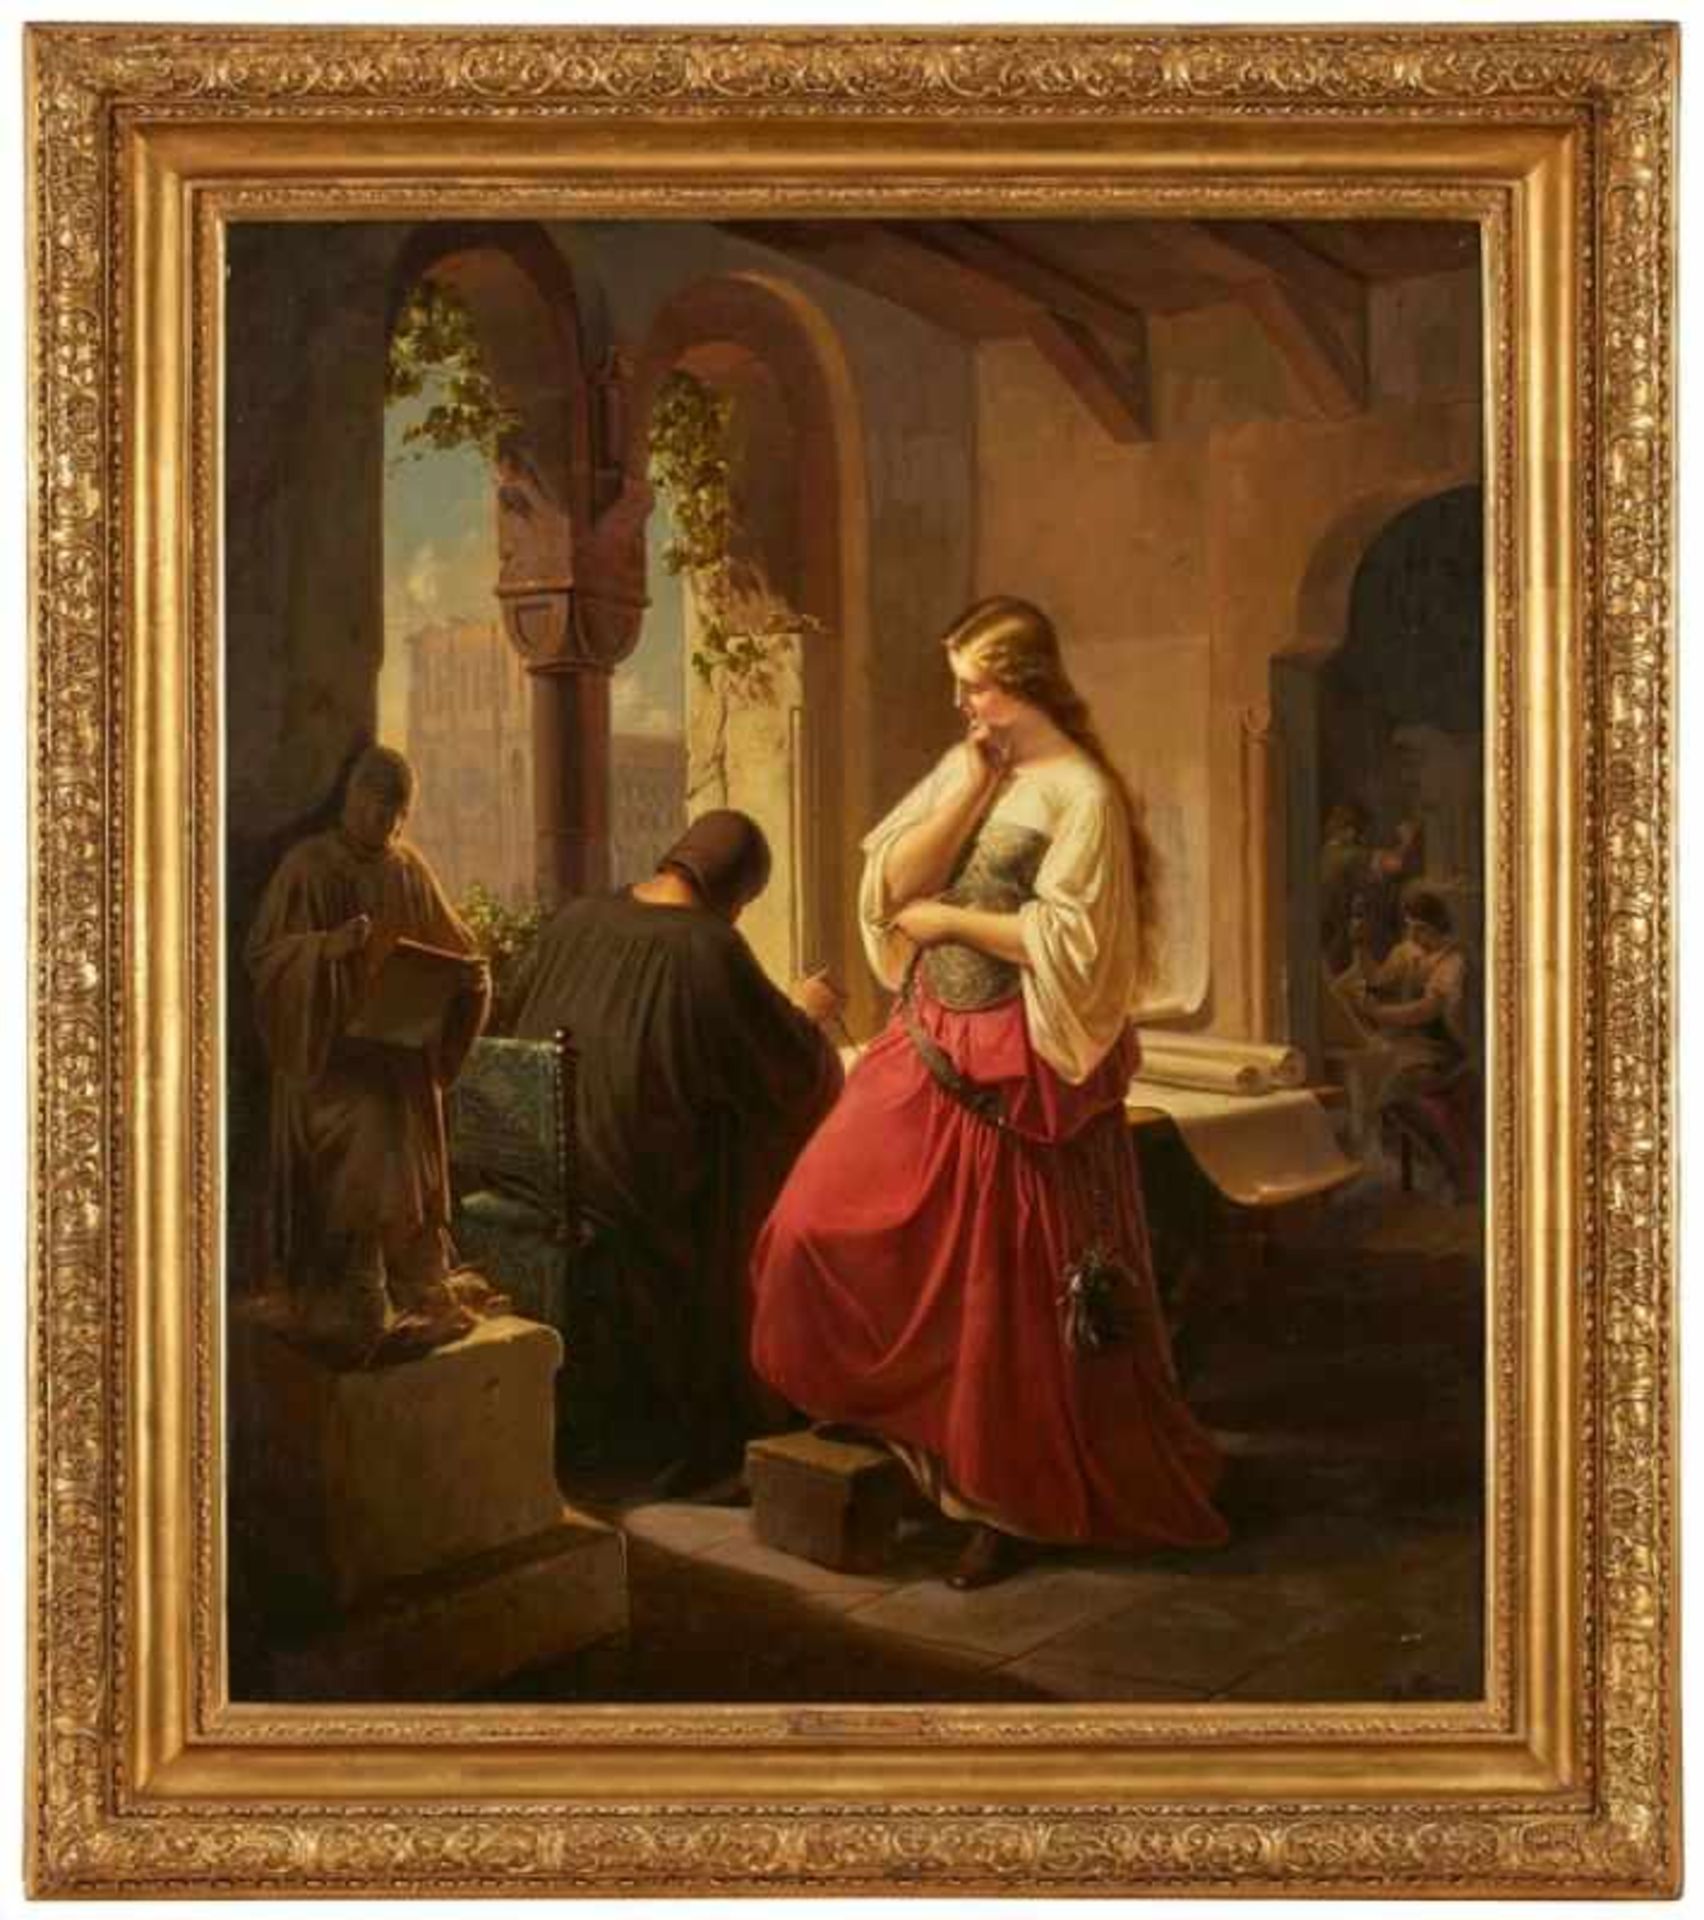 Gemälde Ludwig Zahn 1830 München - 1855 München Genremaler. Schüler der Münchner Akademie. "